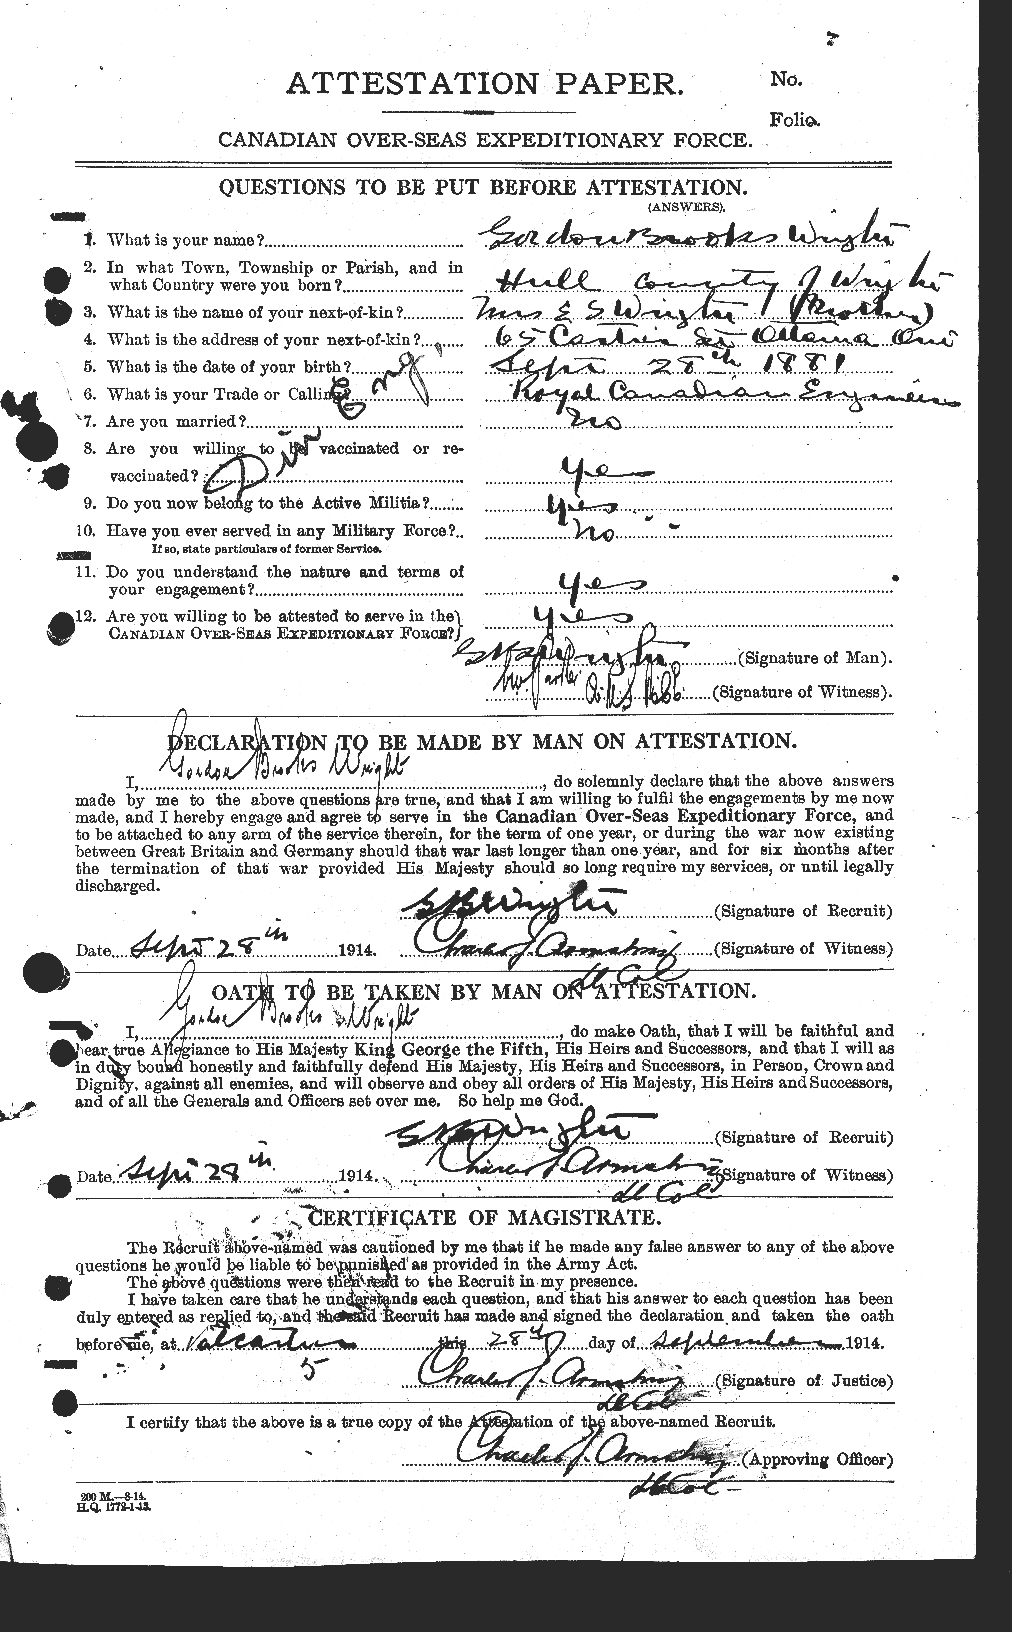 Dossiers du Personnel de la Première Guerre mondiale - CEC 684060a